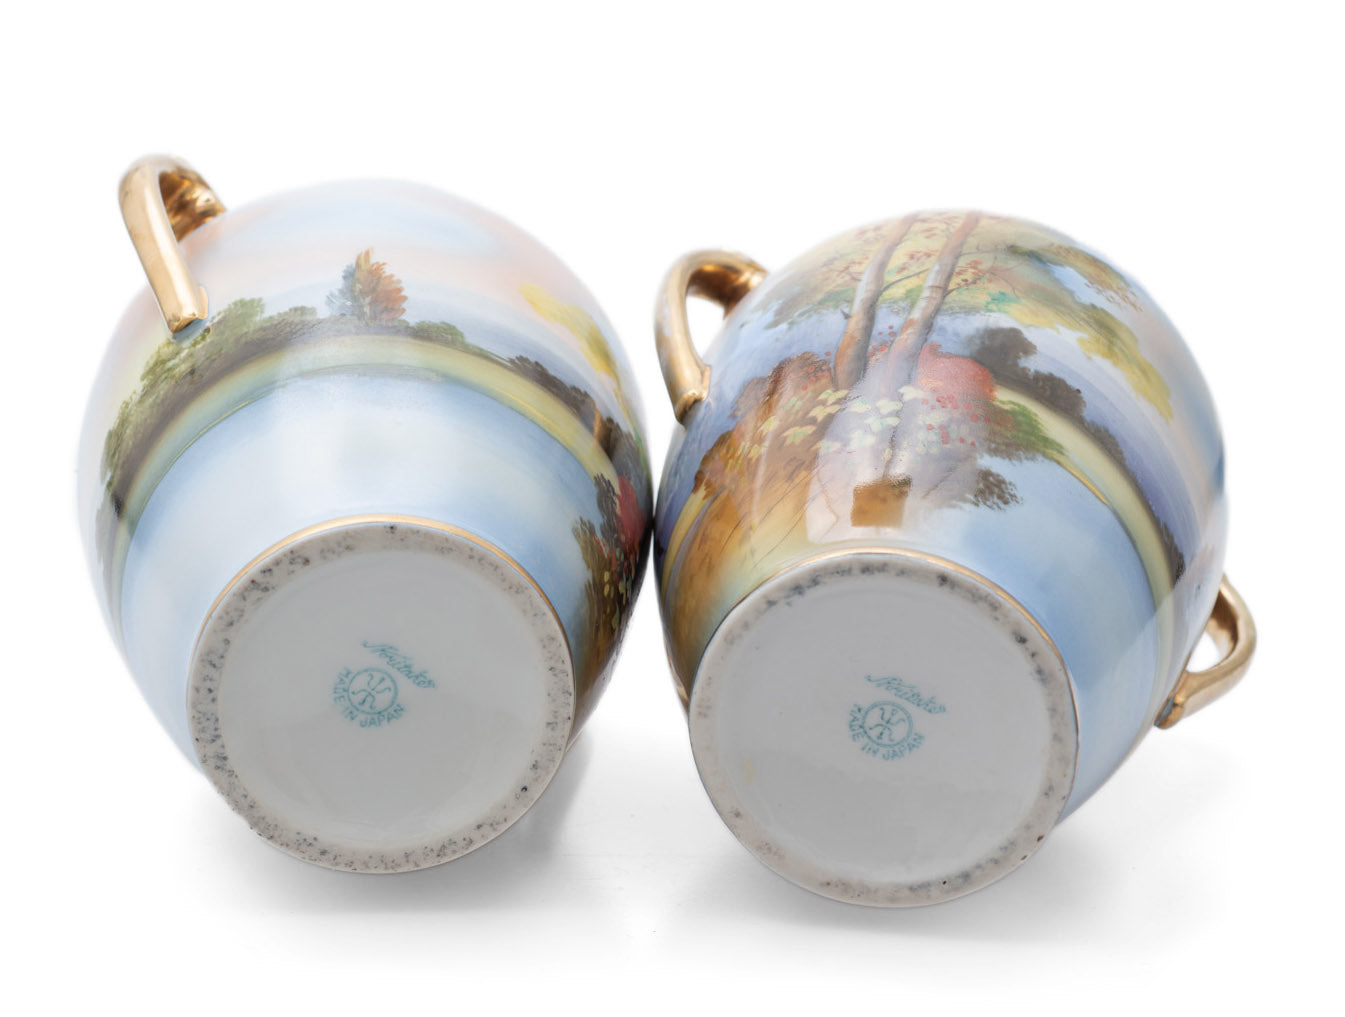 Pair Antique Noritake Porcelain Landscape/Seascape Vases with Twin Handles (Code 2490)